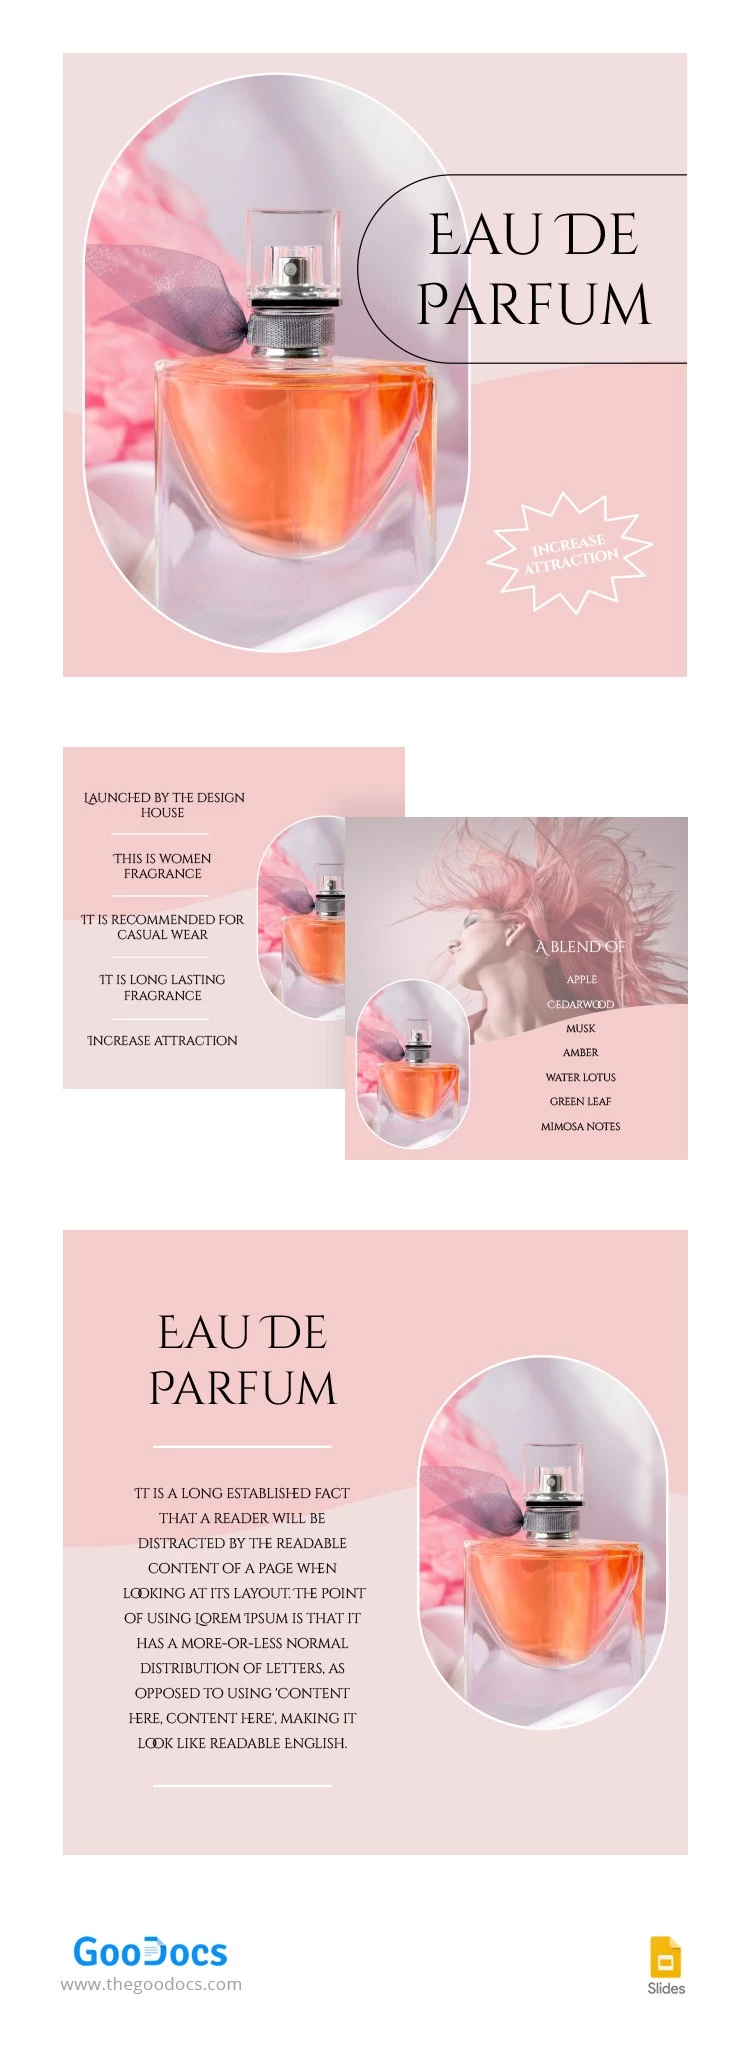 Atraente Eau De Parfum Produto da Amazon - free Google Docs Template - 10063849